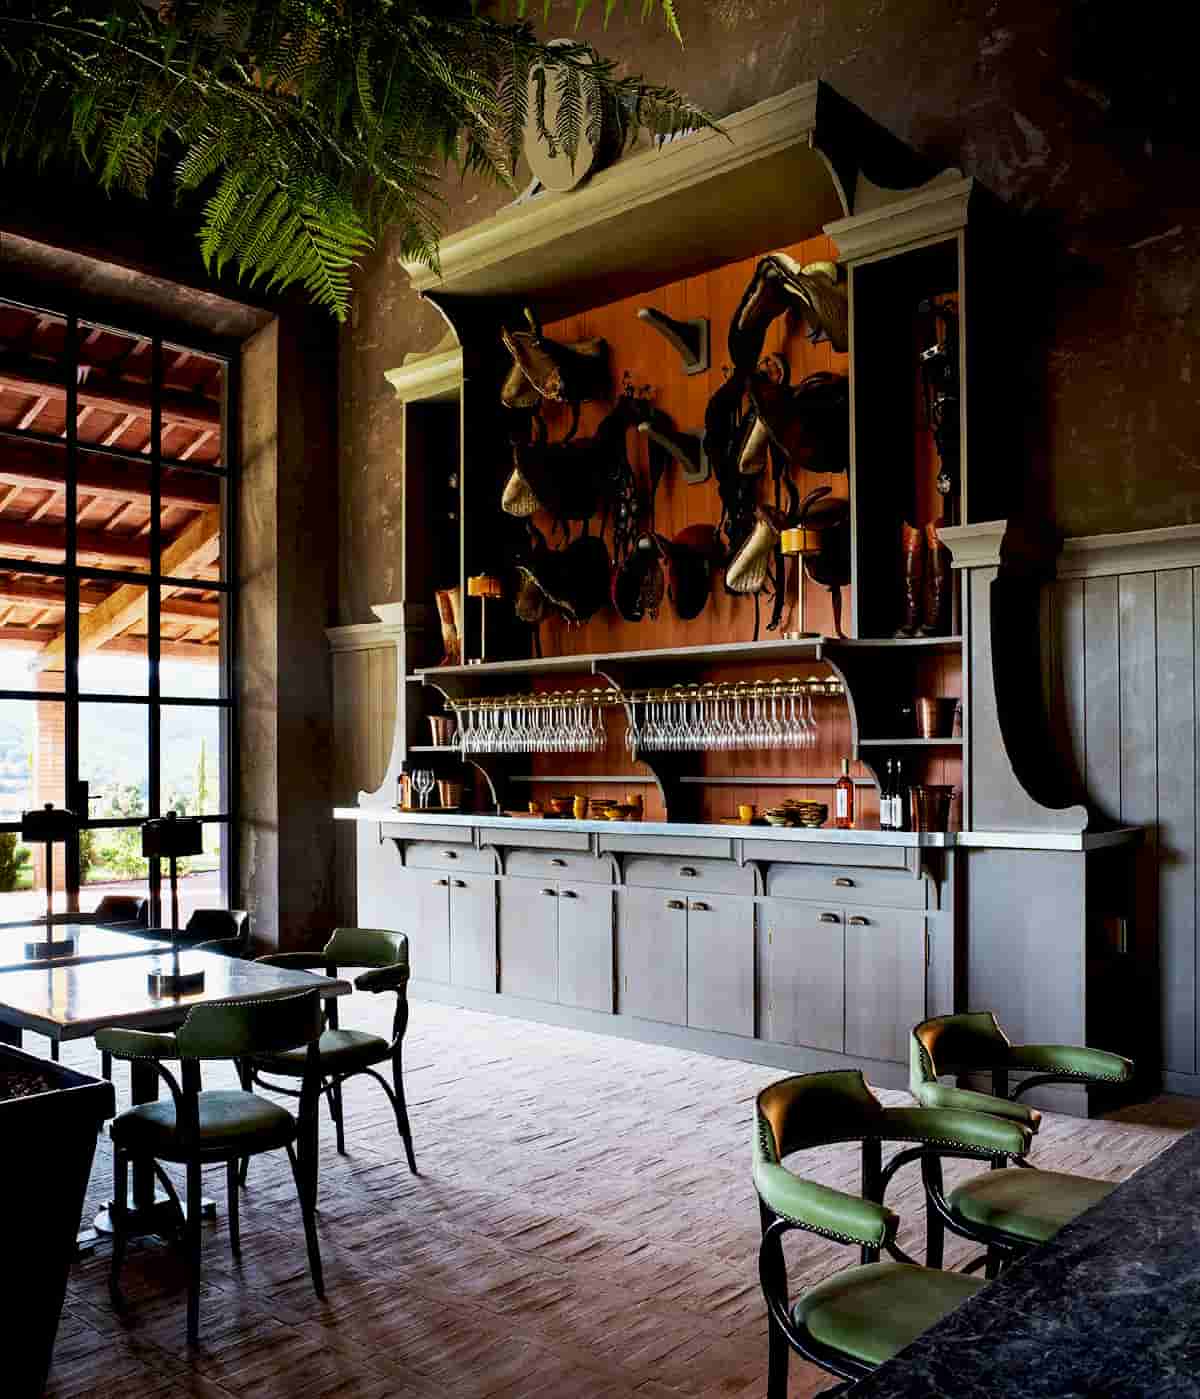 Local craftsmanship meets contemporary design in the idyllic Reschio Estate in rural Umbria